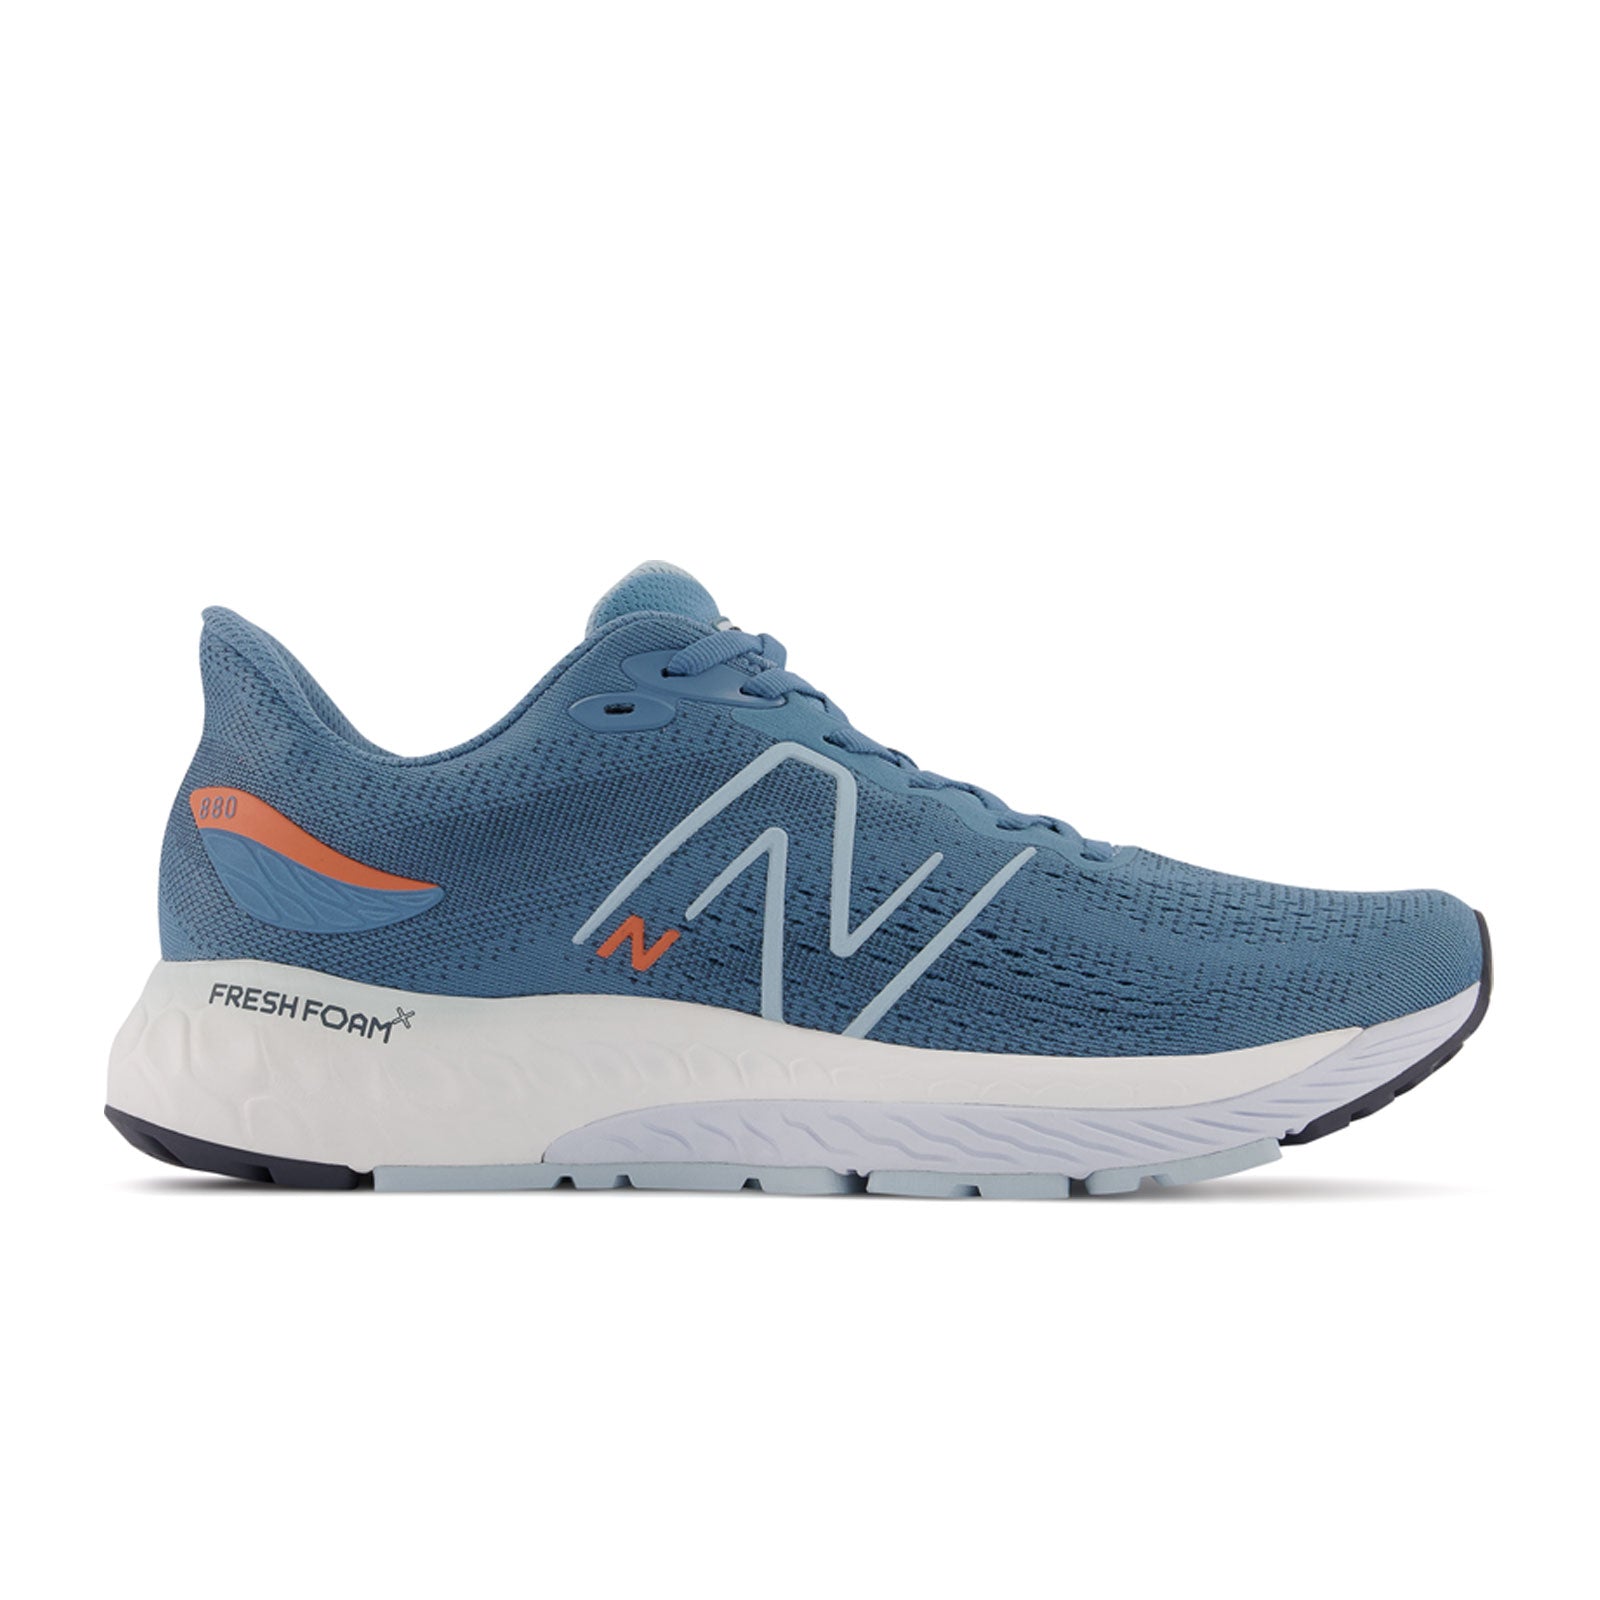 New Balance Fresh Foam X 880 v12 Running Shoe (Men) - Spring Tide/Vibrant Orange/Morning Fog Athletic - Running - Neutral - The Heel Shoe Fitters